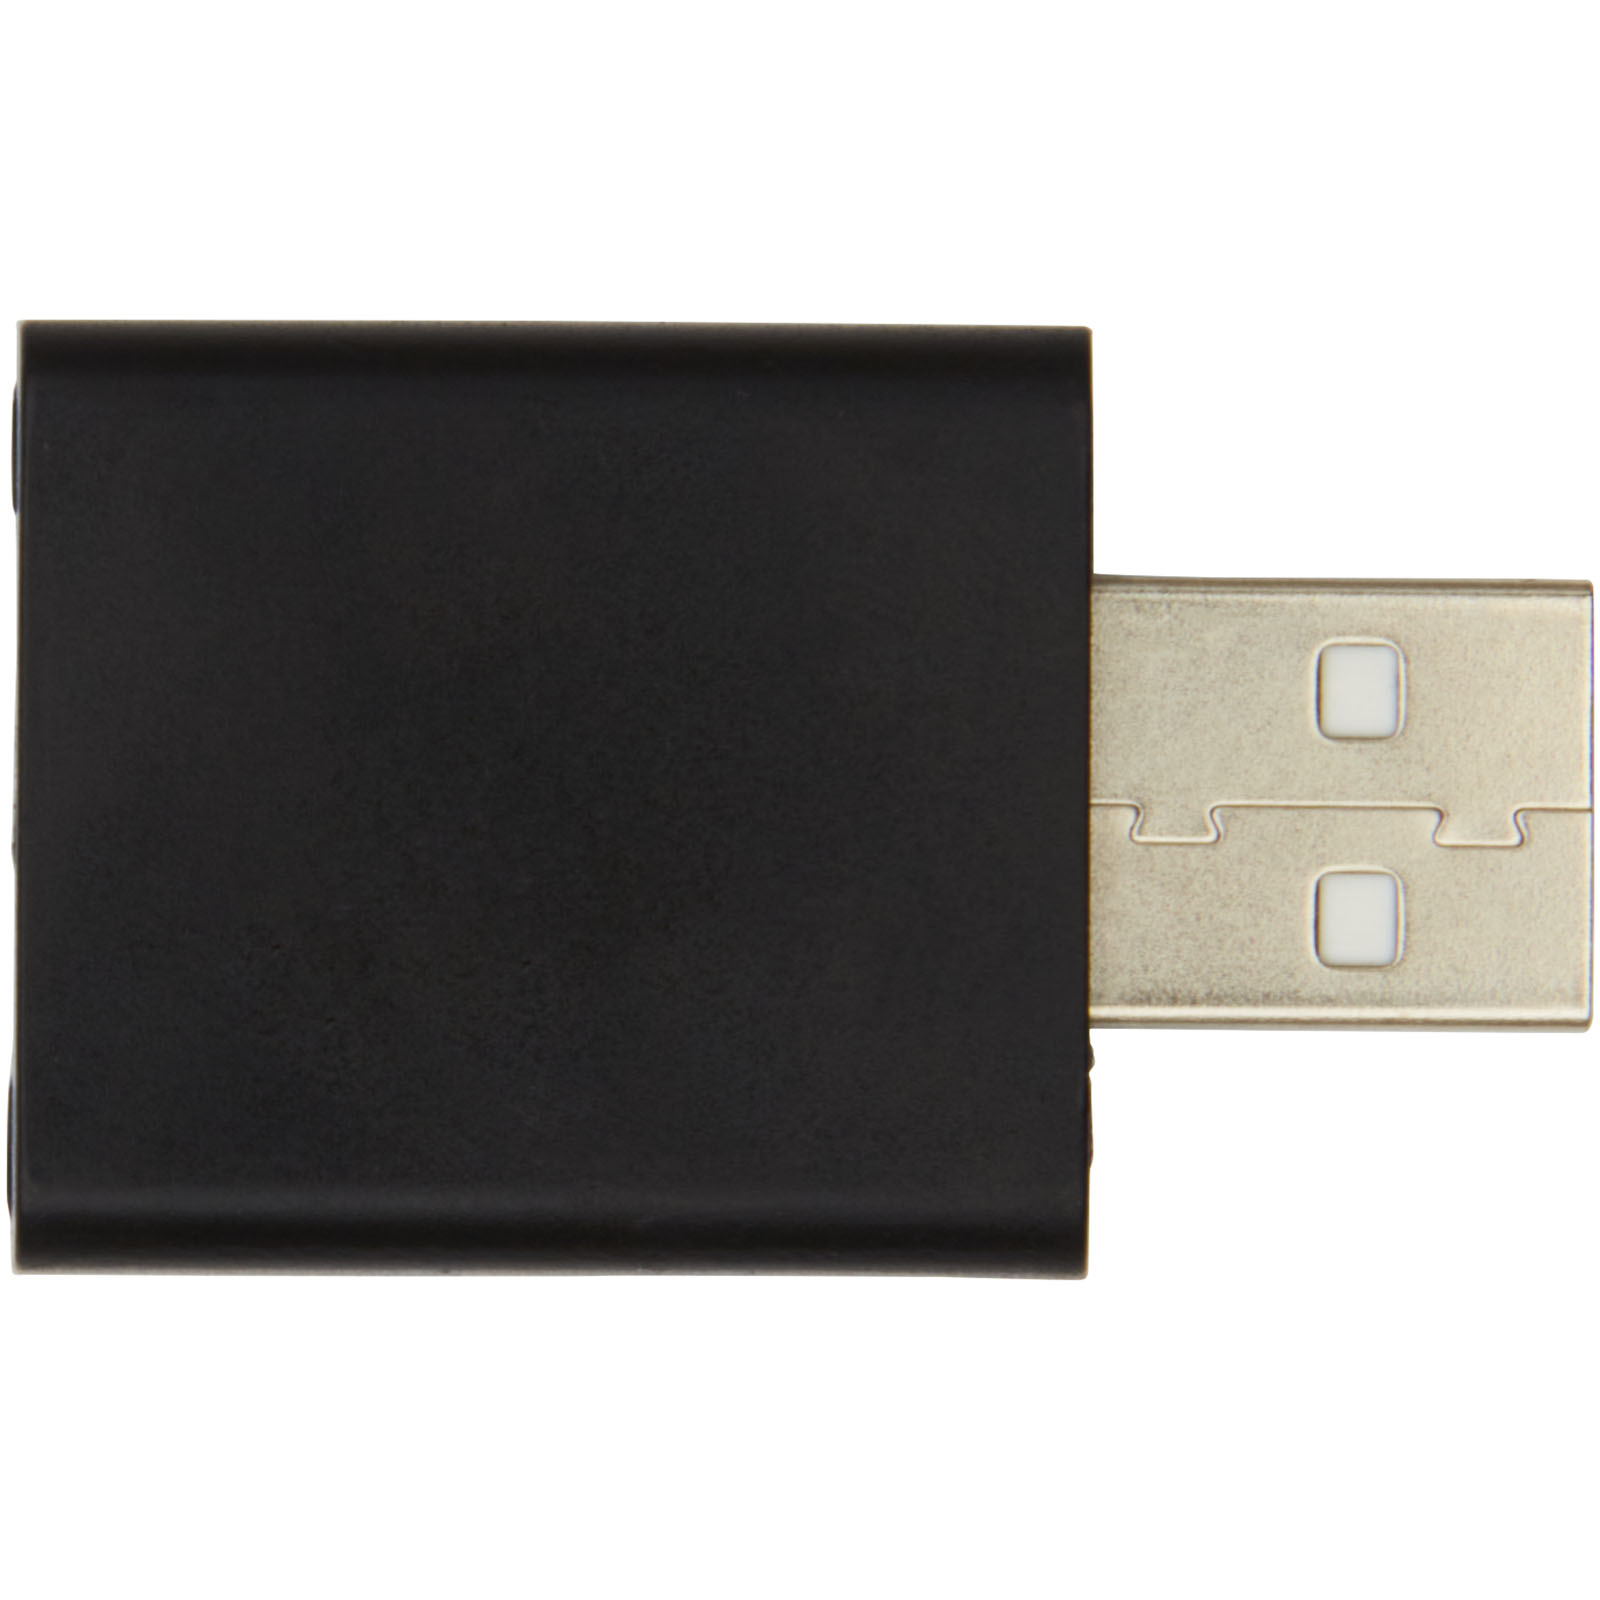 Advertising Computer Accessories - Incognito USB data blocker - 2